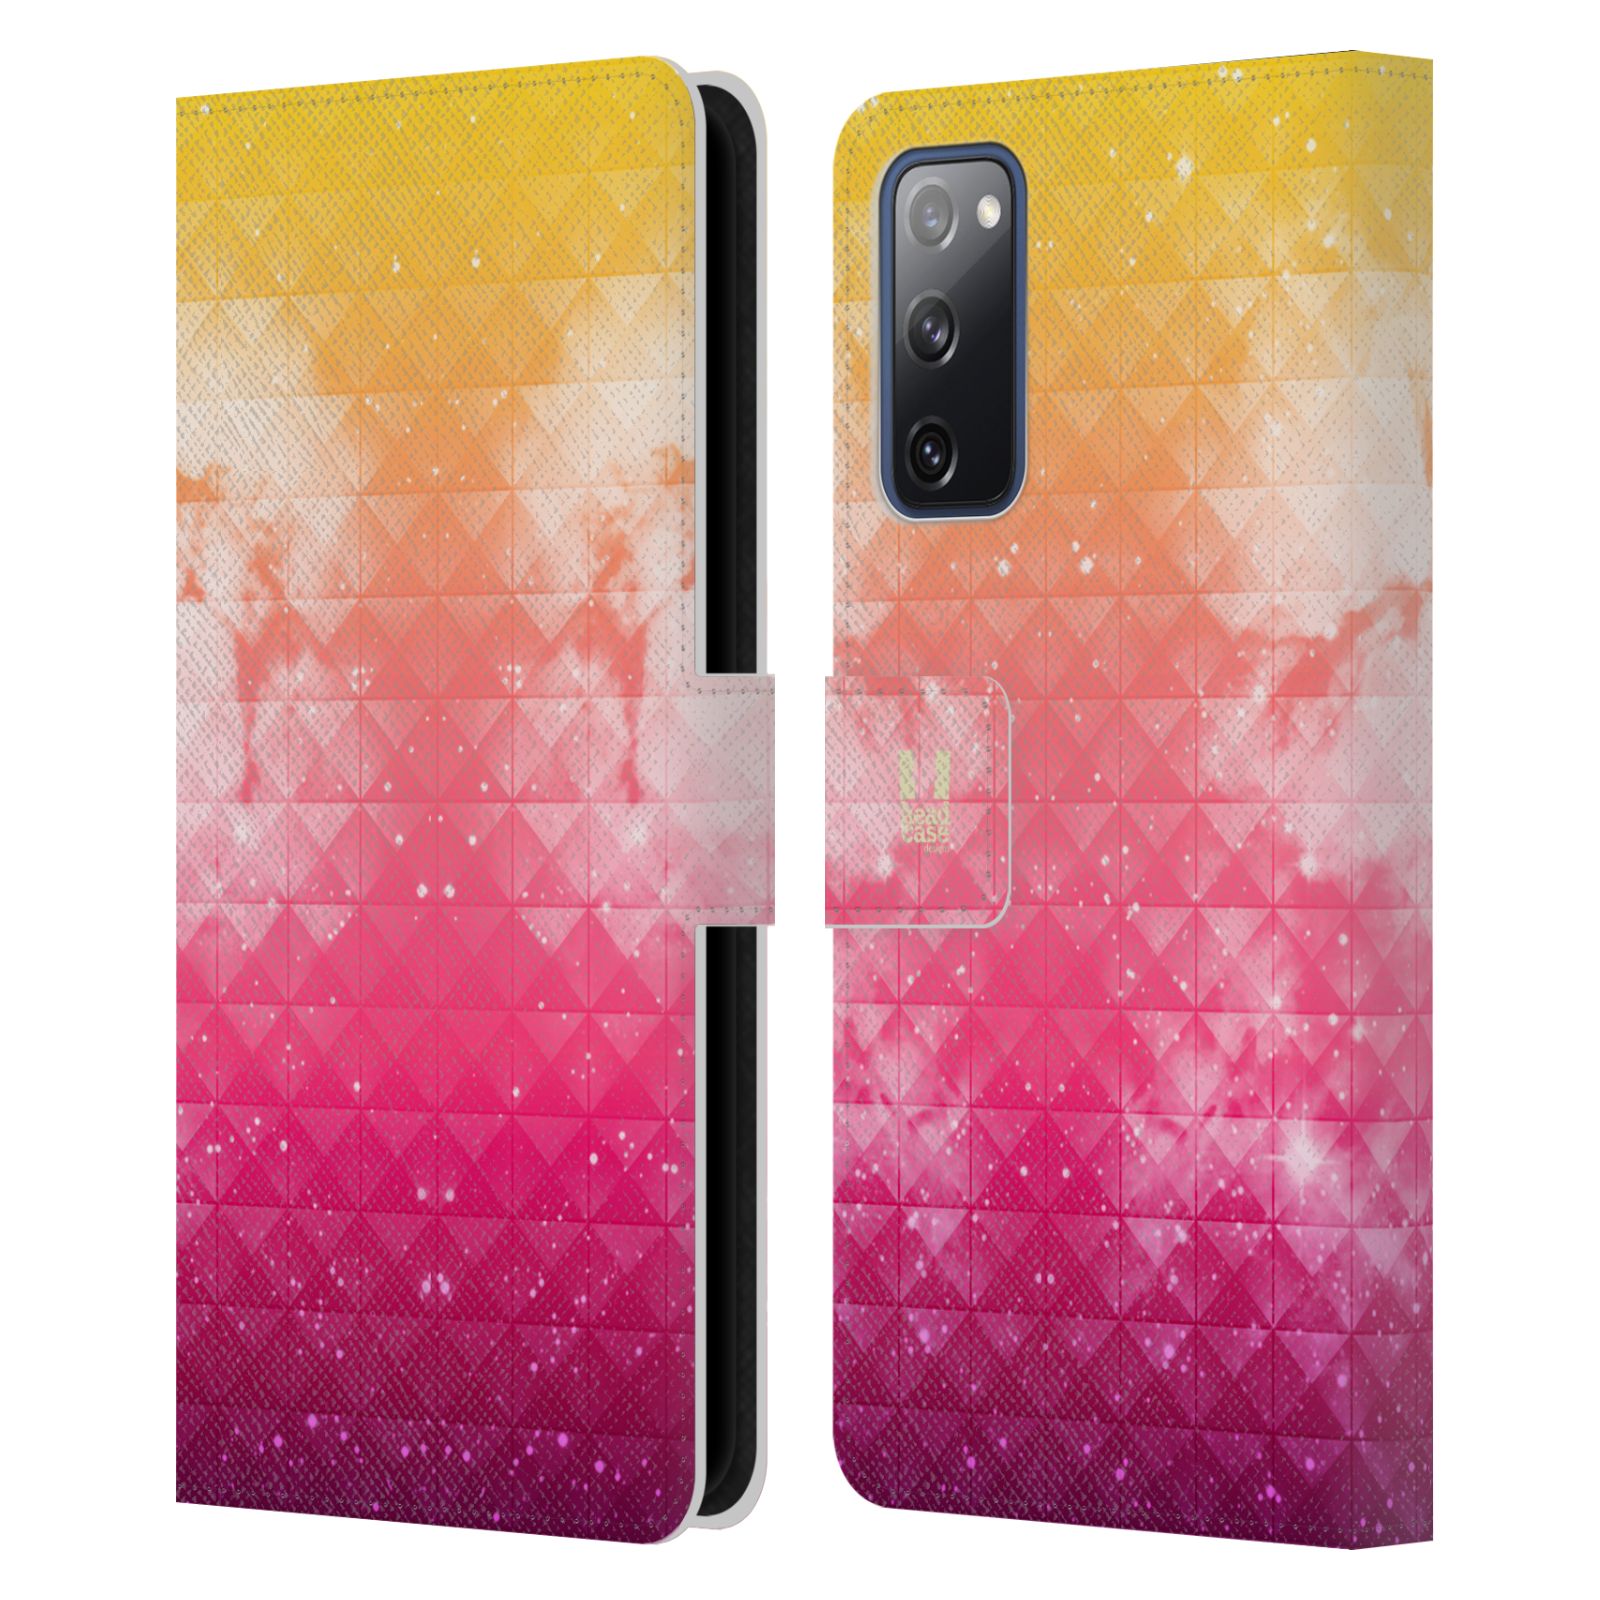 Pouzdro HEAD CASE na mobil Samsung Galaxy S20 FE / S20 FE 5G barevná vesmírná mlhovina oranžová a růžová